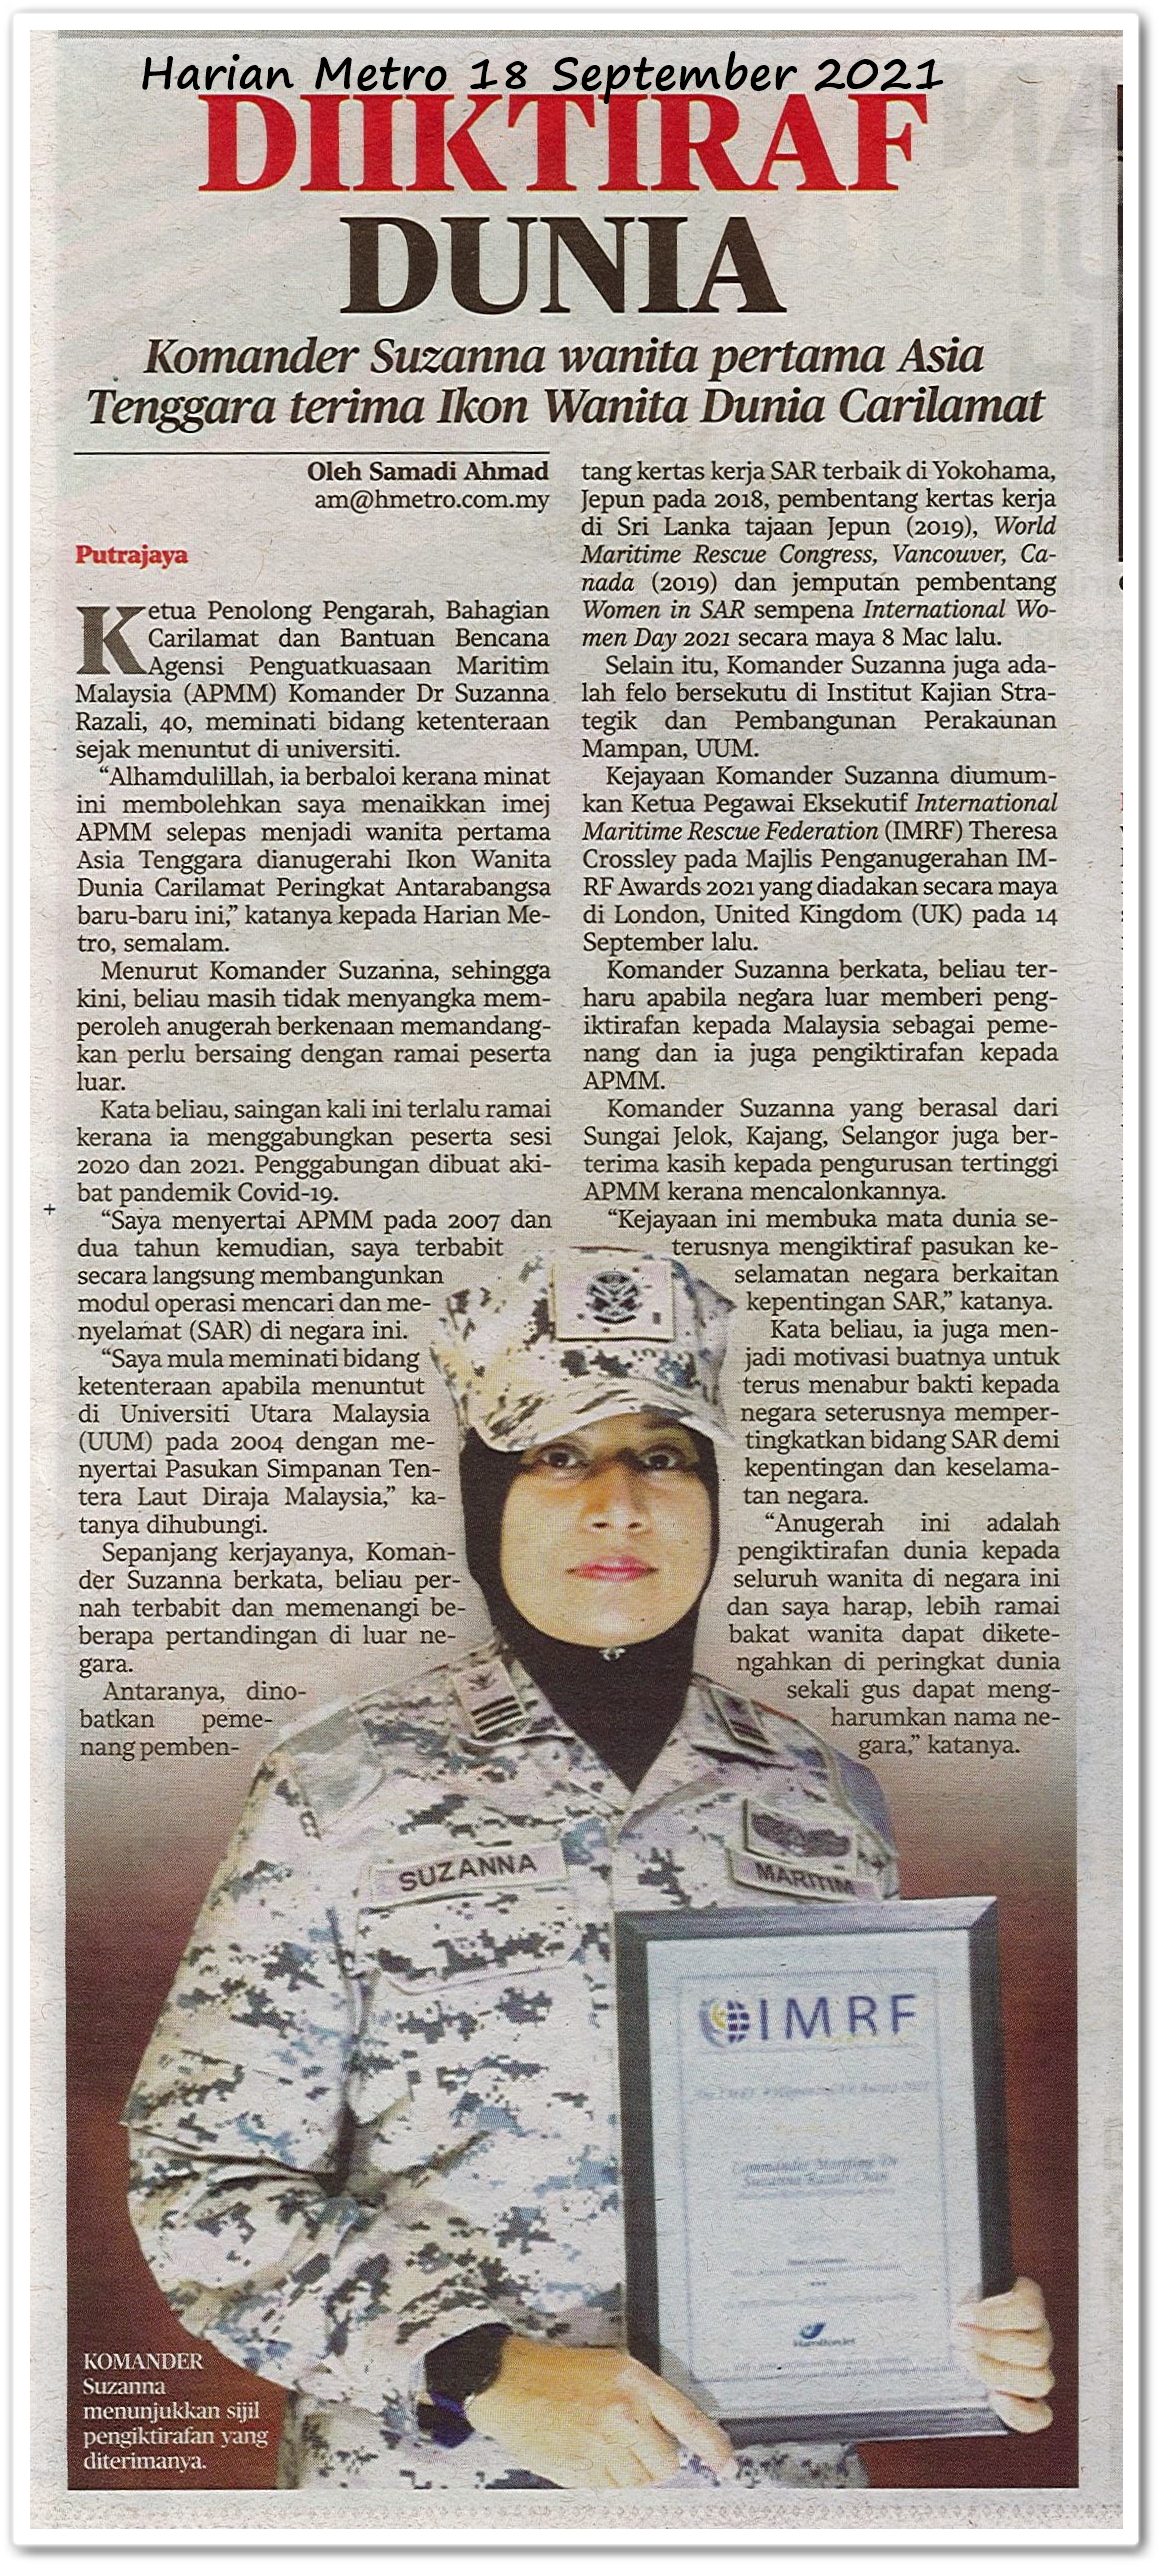 Diiktiraf dunia ; Komander Suzanna wanita pertama Asia Tenggara terima Ikon Wanita Dunia Carilamat - Keratan akhbar Harian Metro 18 September 2021